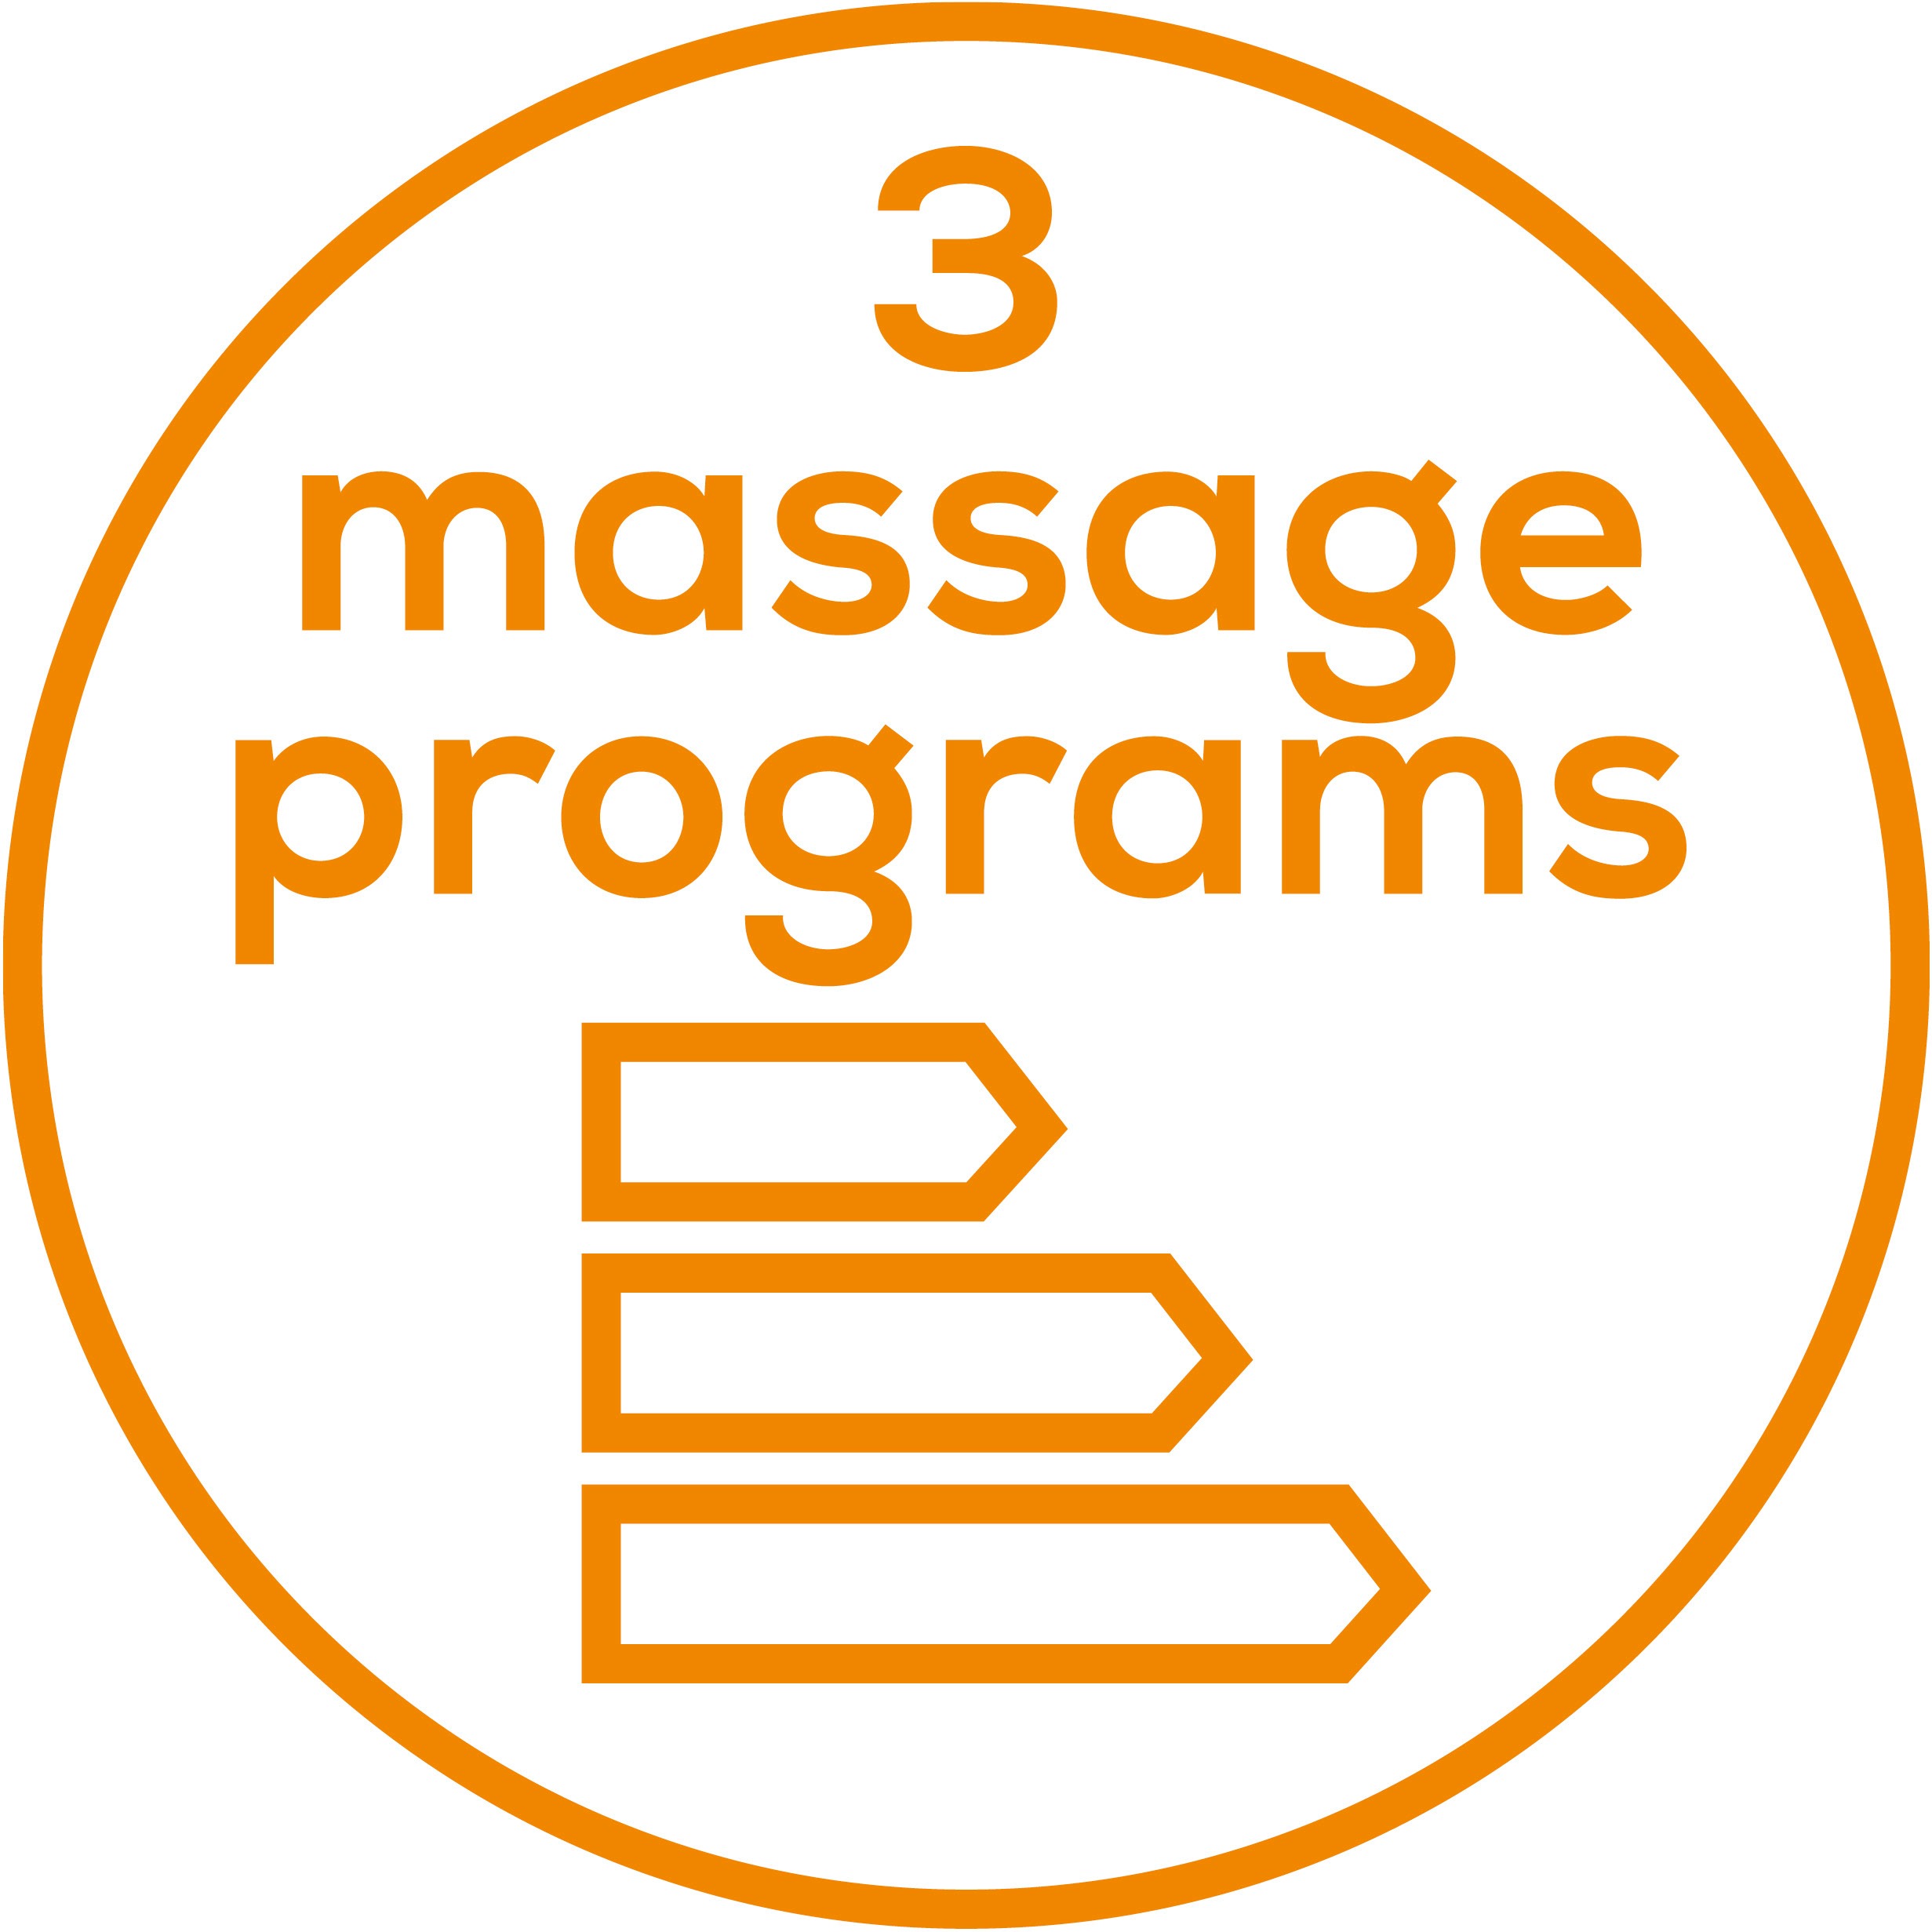 Programmes de massage Sélection parmi 3 programmes de massage prédéfinis 